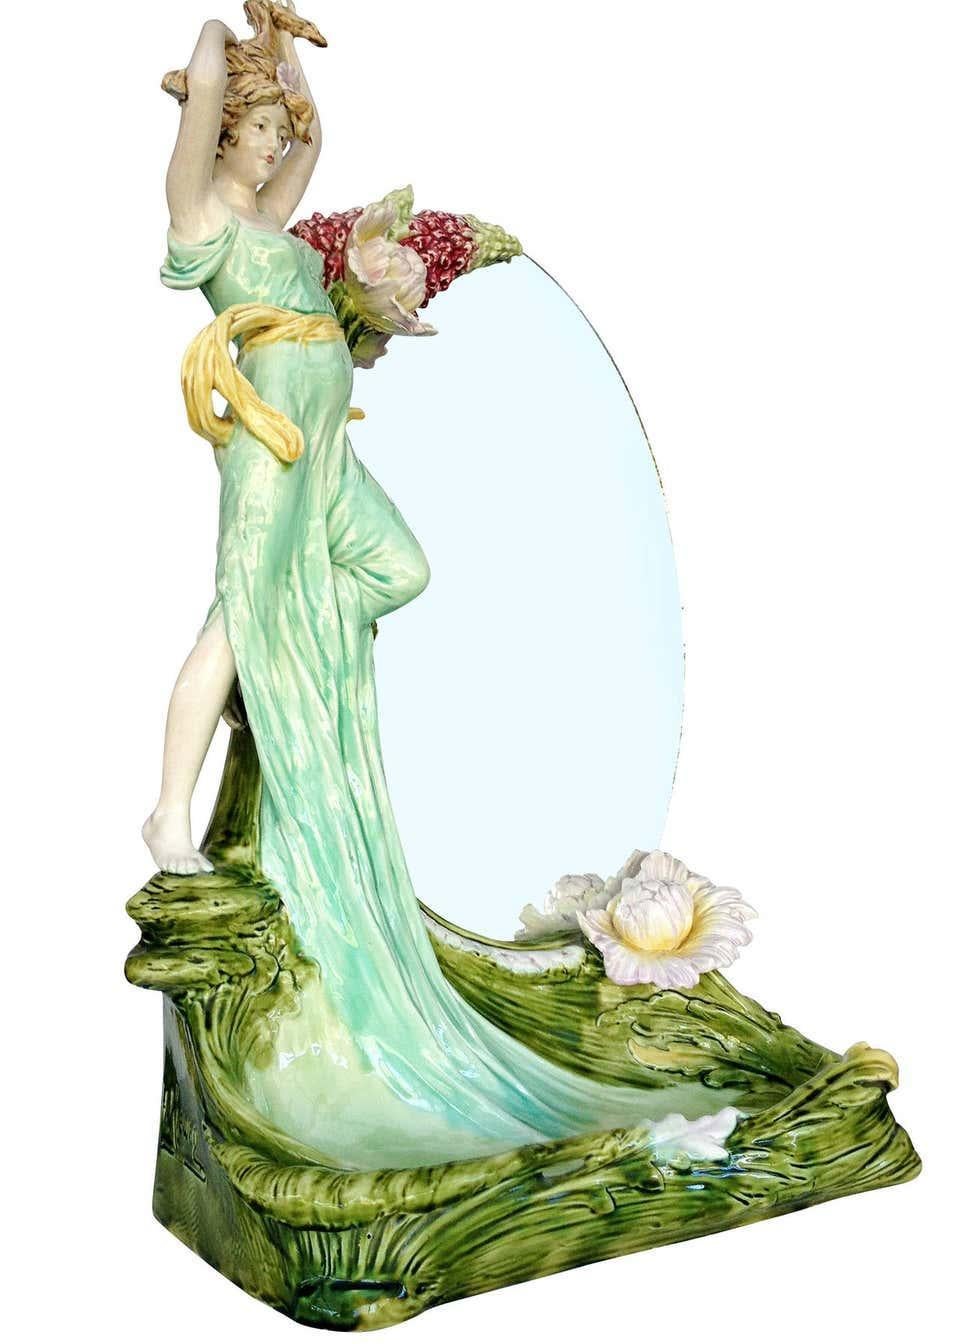 Ce miroir de courtoisie ovale est décoré d'une grande statue féminine en céramique de 23 pouces avec des motifs floraux Art Nouveau. Un grand plateau placé devant le miroir est décoré d'un motif de feuilles organiques. Le plateau peut accueillir des